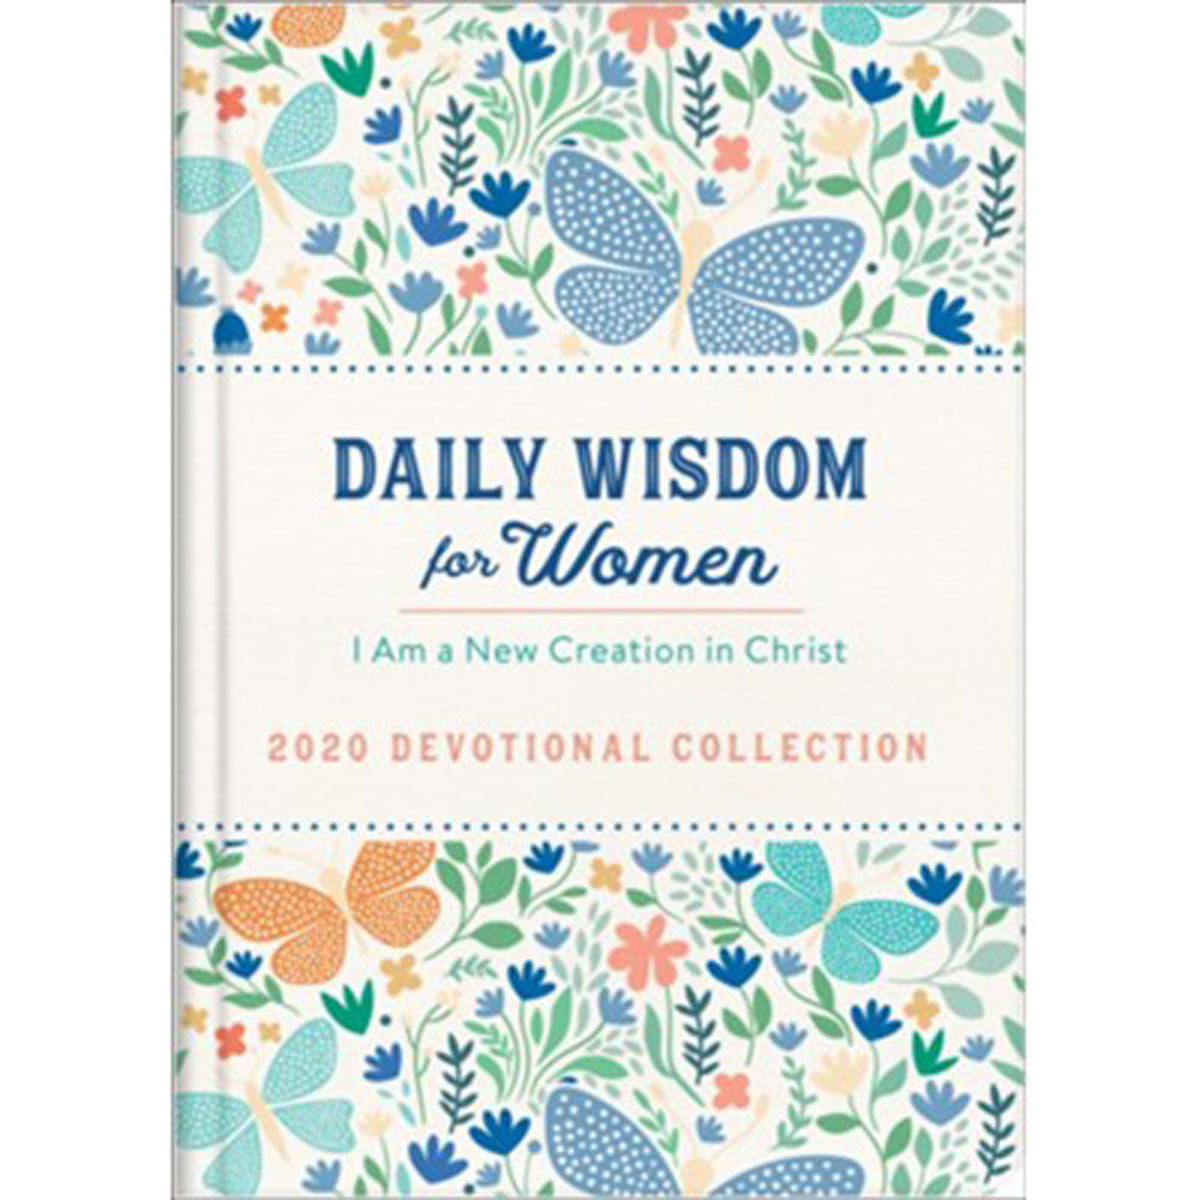 Daily Wisdom for Women Devotional 2020